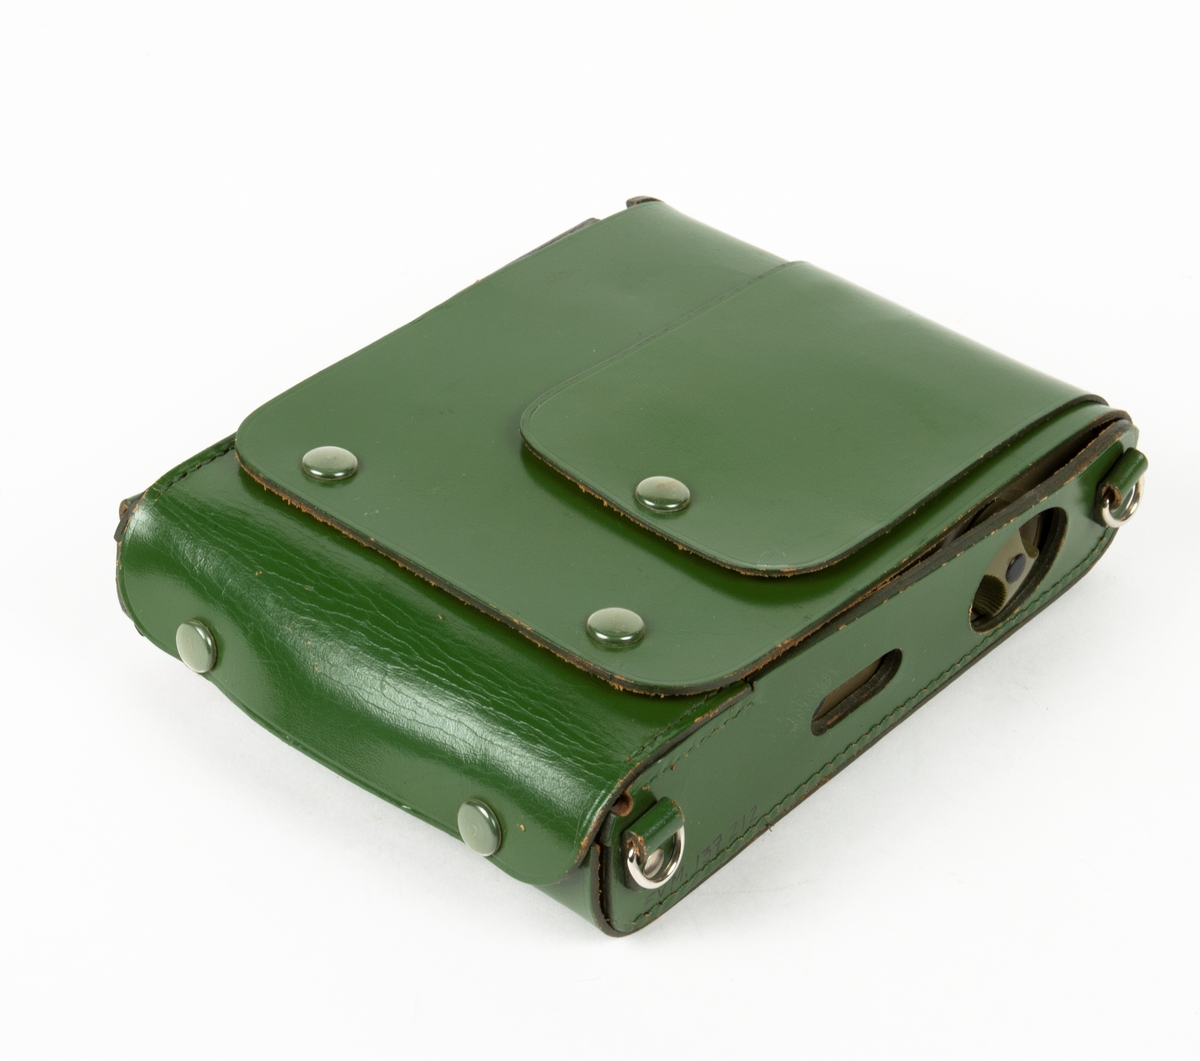 Intensimetern ligger i en läderväska. I läderväskan finns även en batteribox samt en probe (kännare för mätning av spänning). Till intesimeten följer även en bruksanvisning för Graets intensimeter X-50.